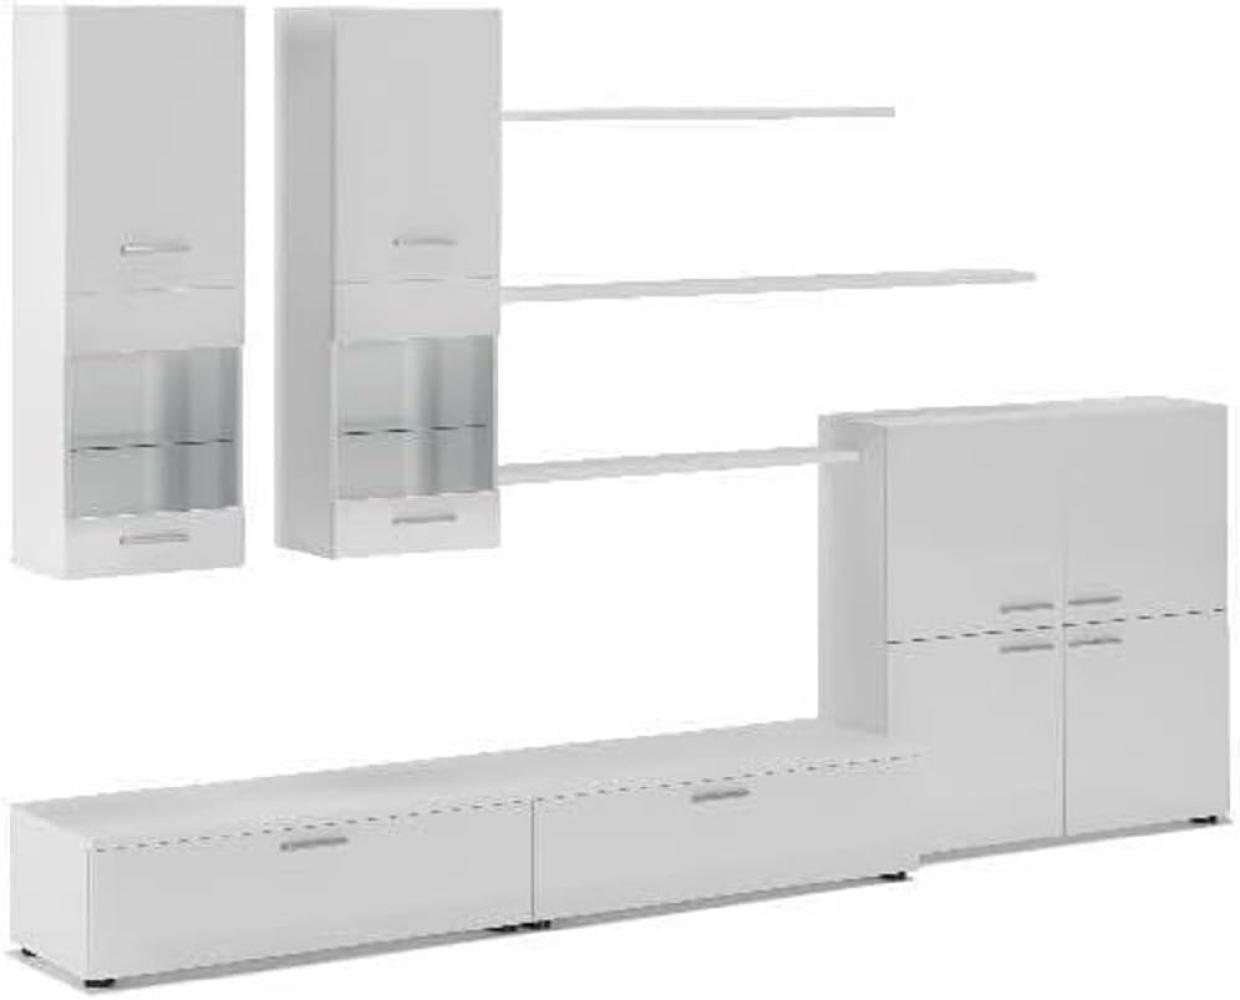 Skraut Home – Wohnzimmermöbel – 189 x 300 x 42 cm – LED-Beleuchtungssystem – Beta-Modell – große Speicherkapazität – moderner Stil – weißes Finish Bild 1